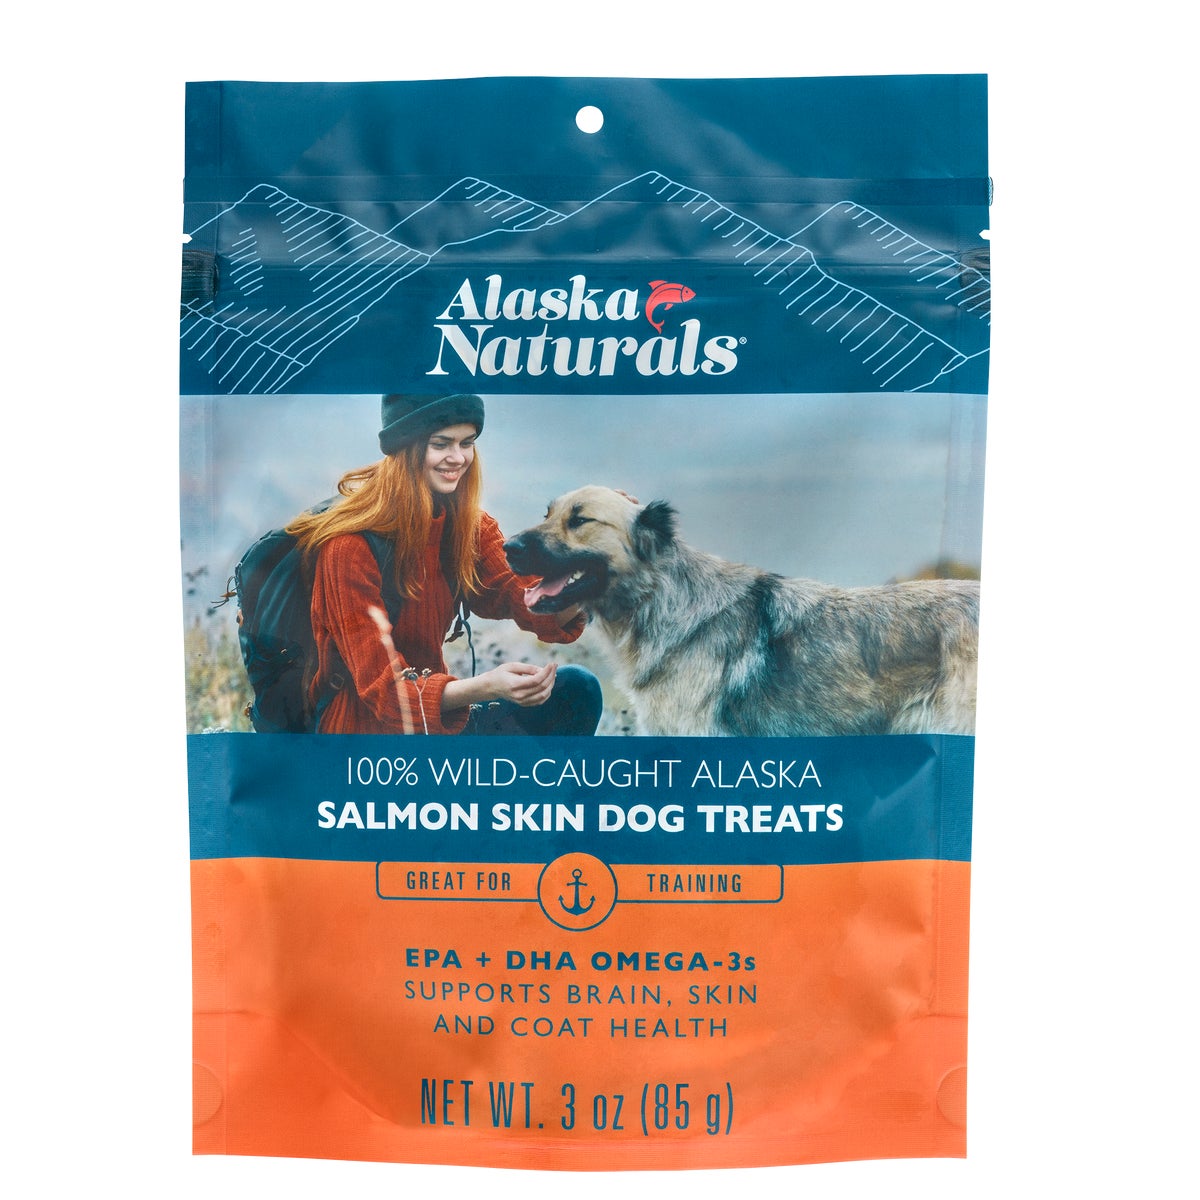 Wild-Caught Alaska Salmon Skin Dog Treats